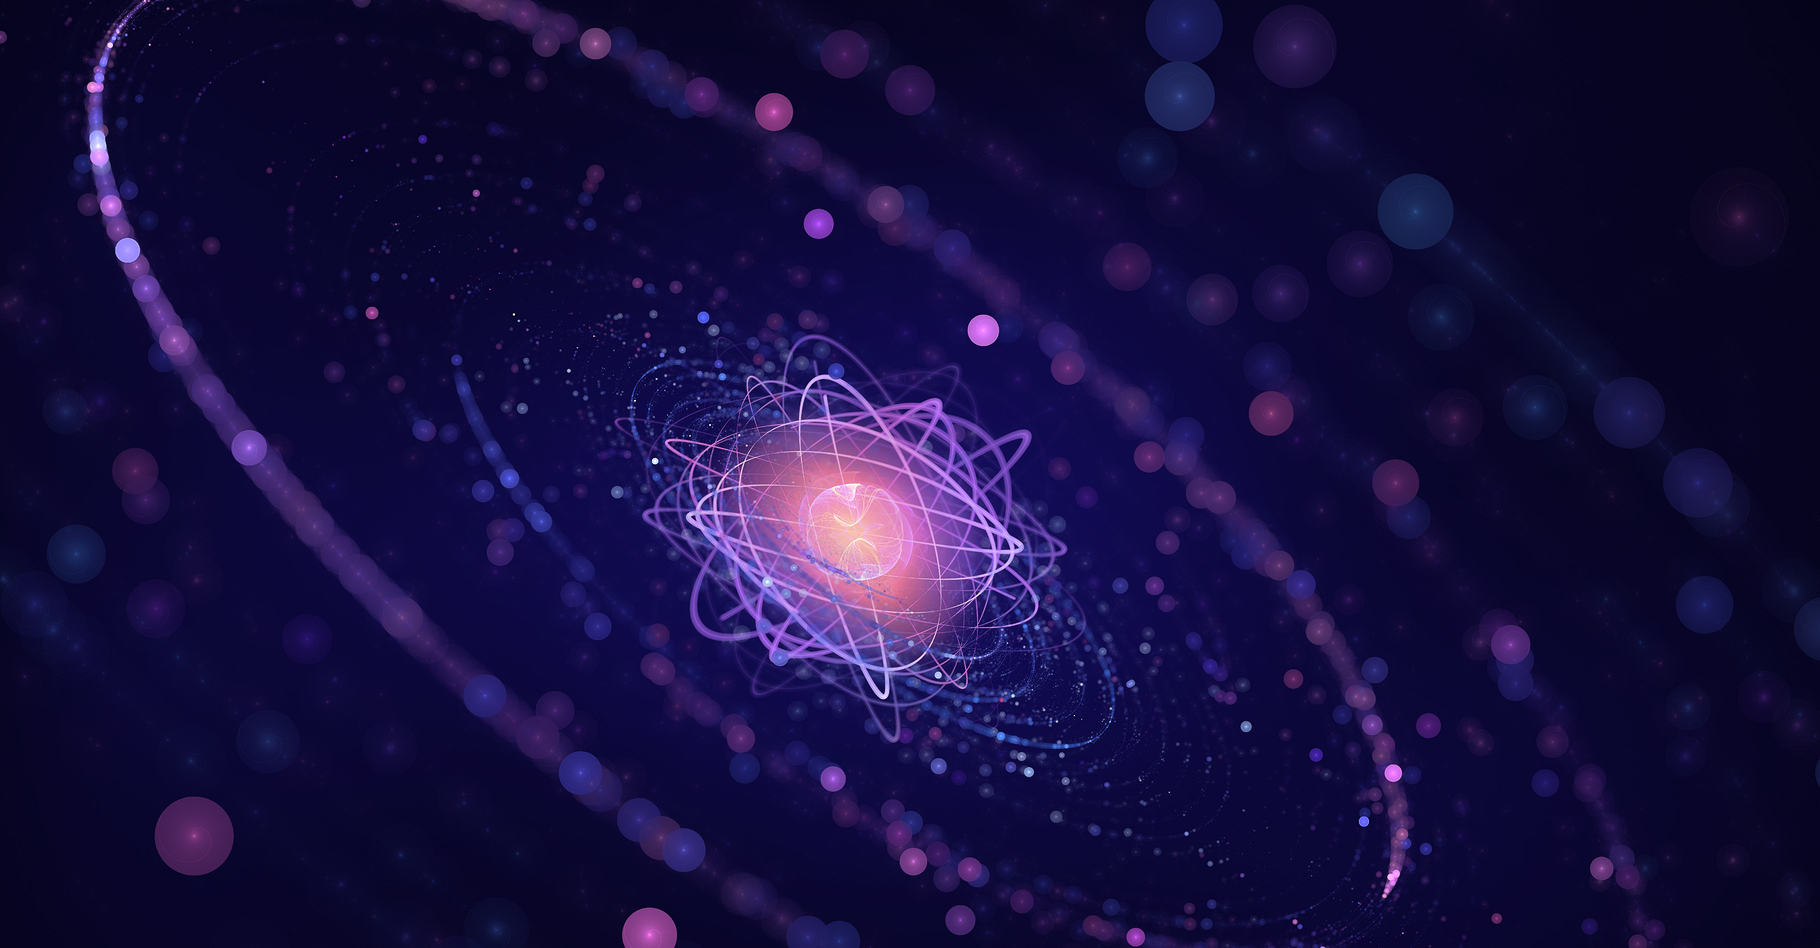 Certains ions échapperaient-ils aux lois de la thermodynamique ? Ici, la représentation d'un atome. © Lana Po, Shutterstock